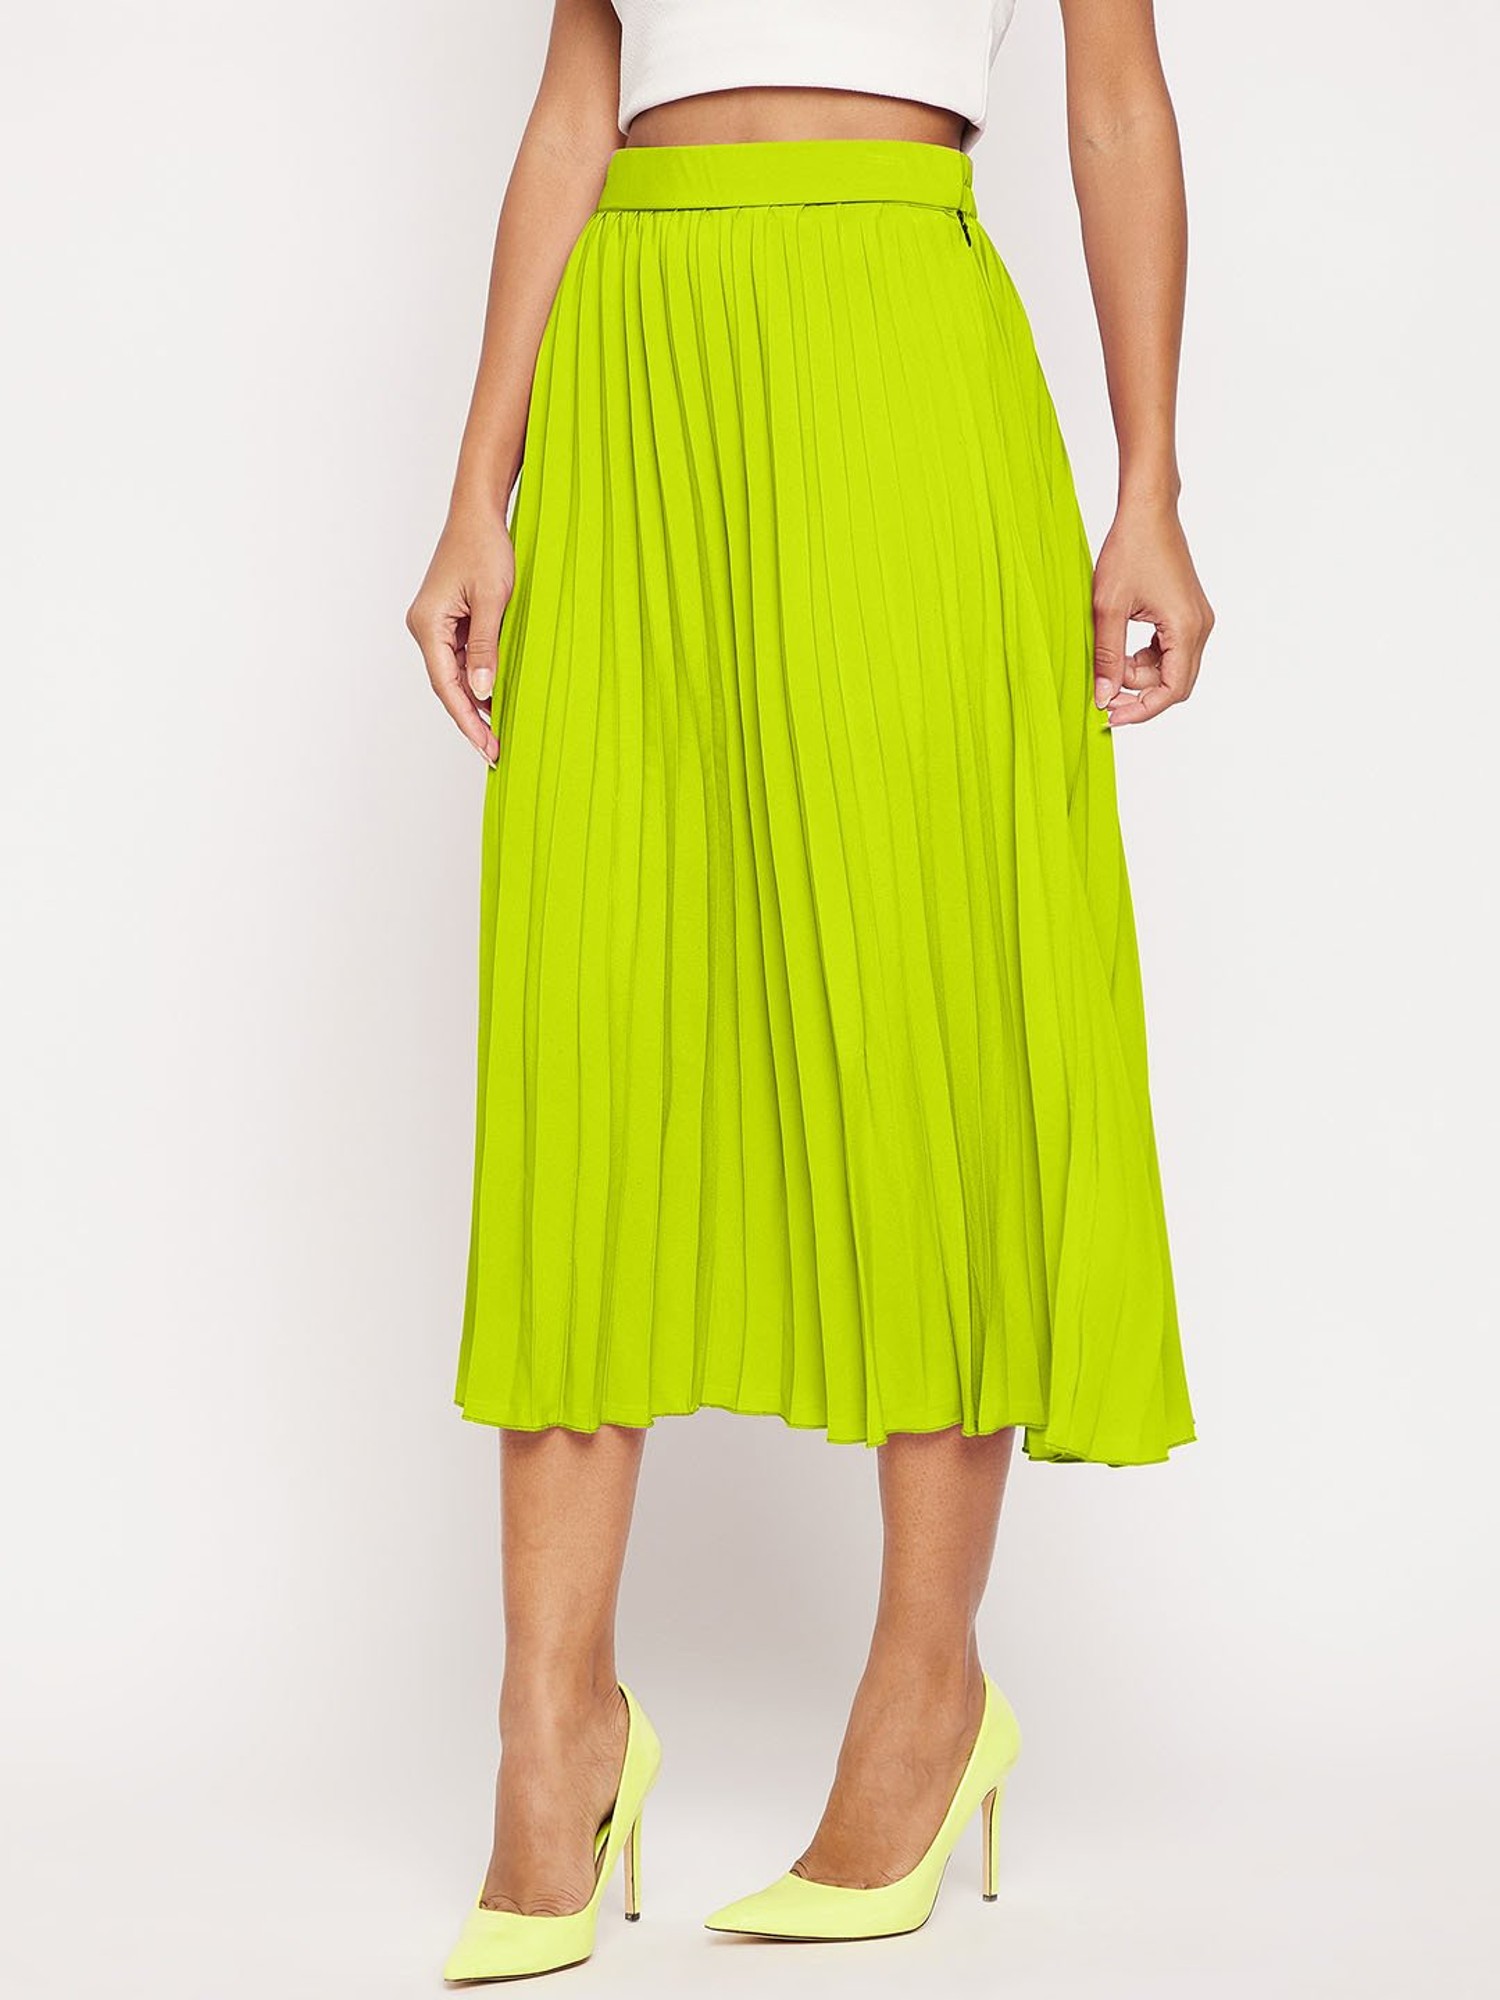 Buy Lime Green Midi Skirt Online for Women  Best Offer Price